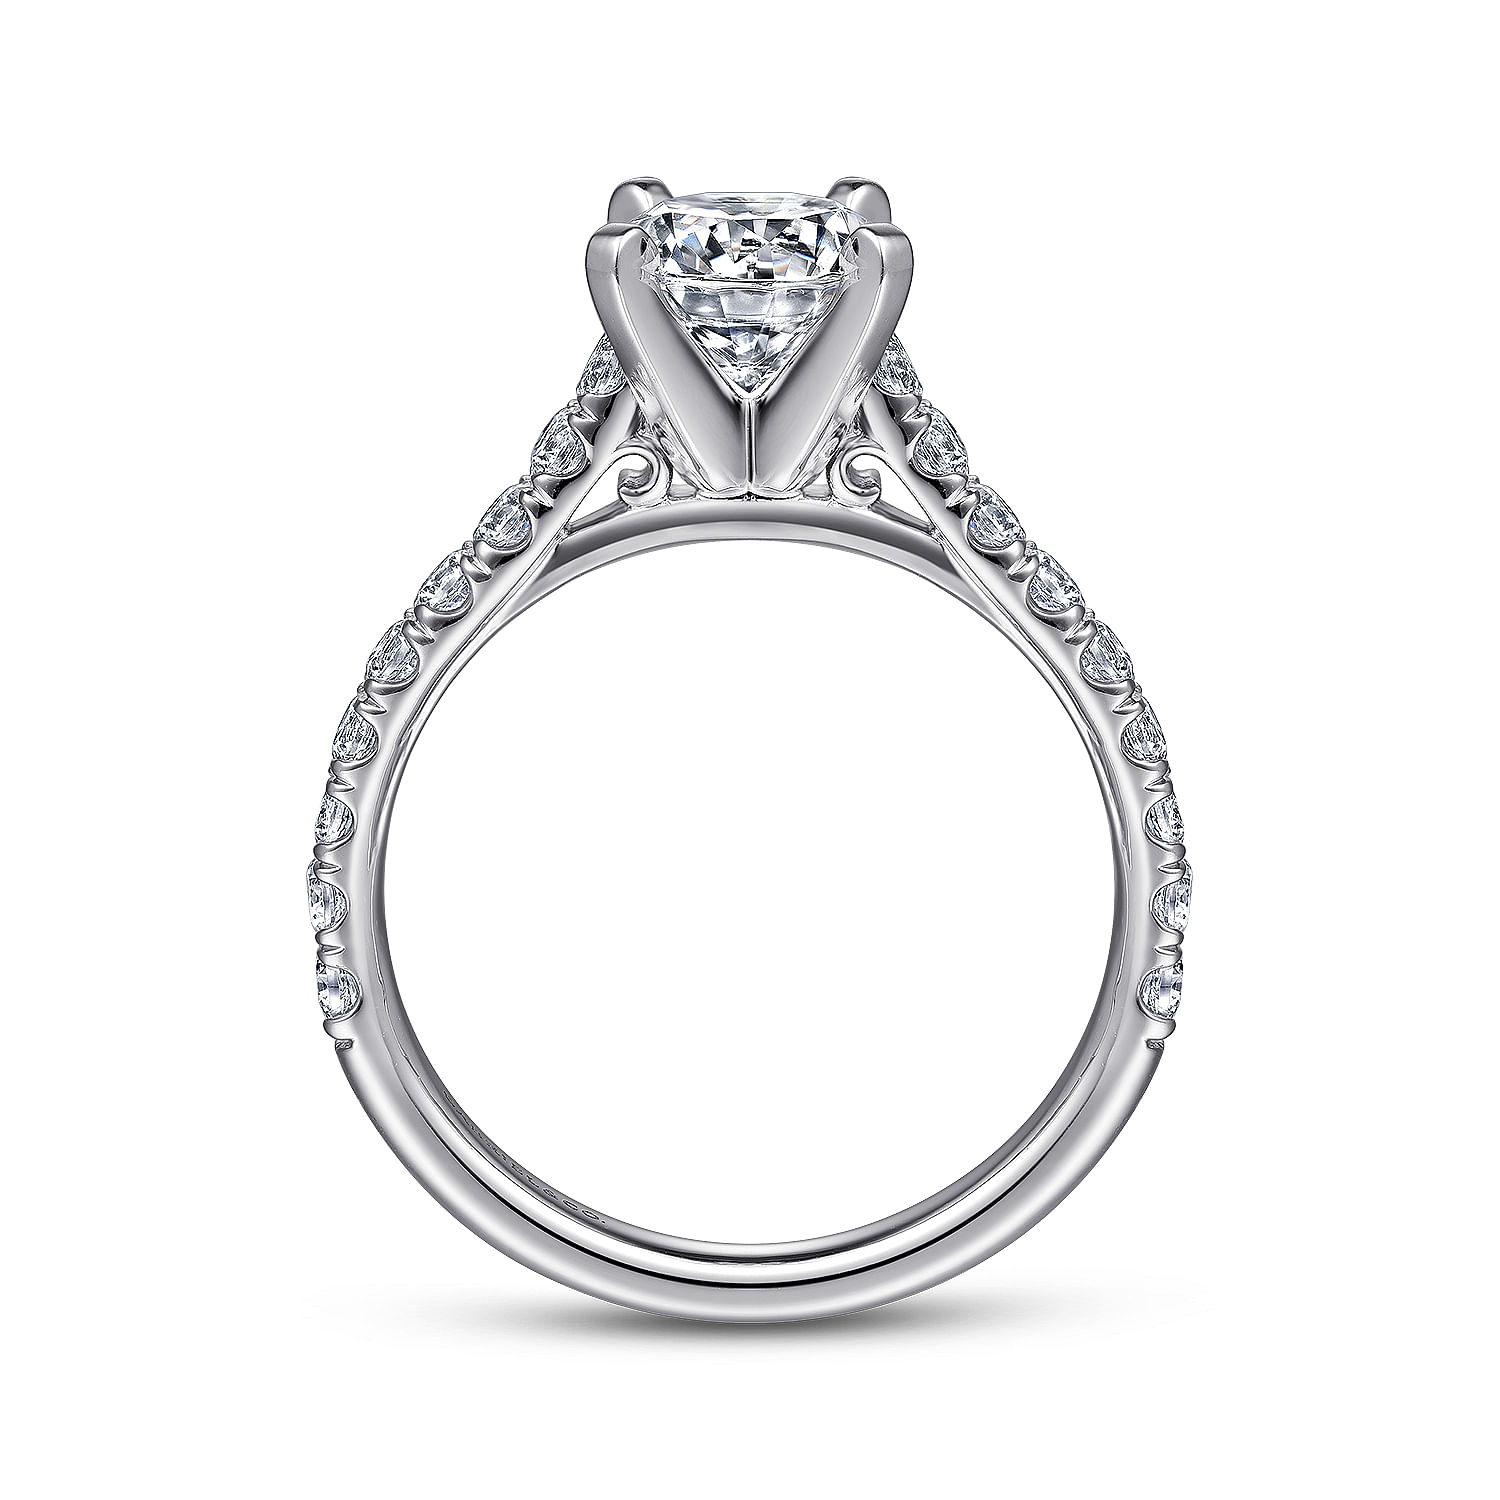 Erica - 14K White Gold Round Diamond Engagement Ring